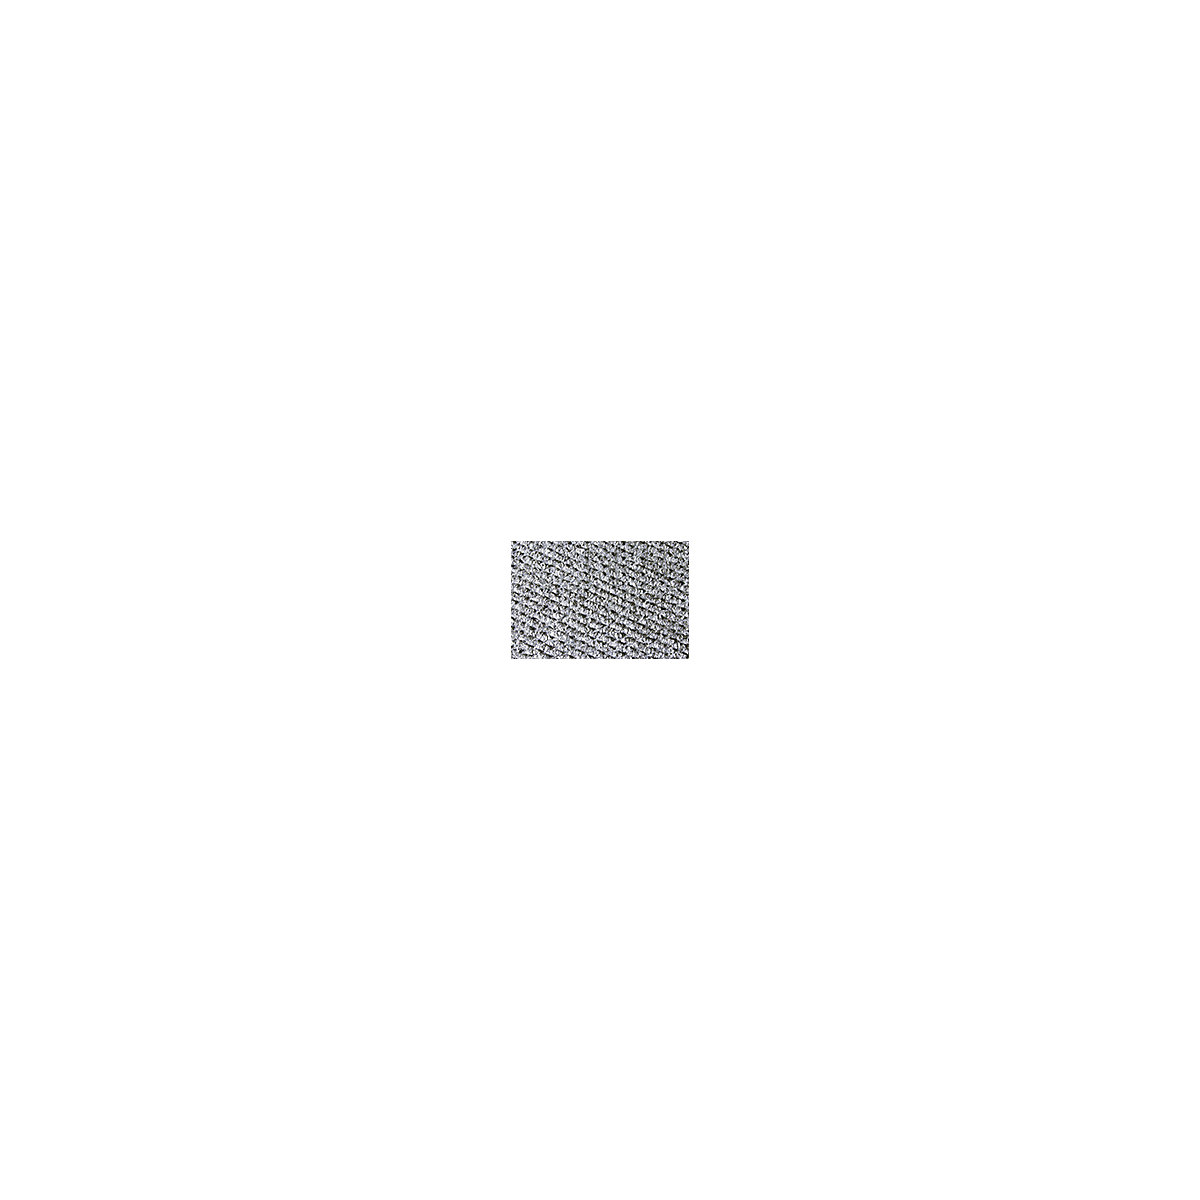 Needlefelt mat – COBA, width 2000 mm, sold by the metre, grey-3